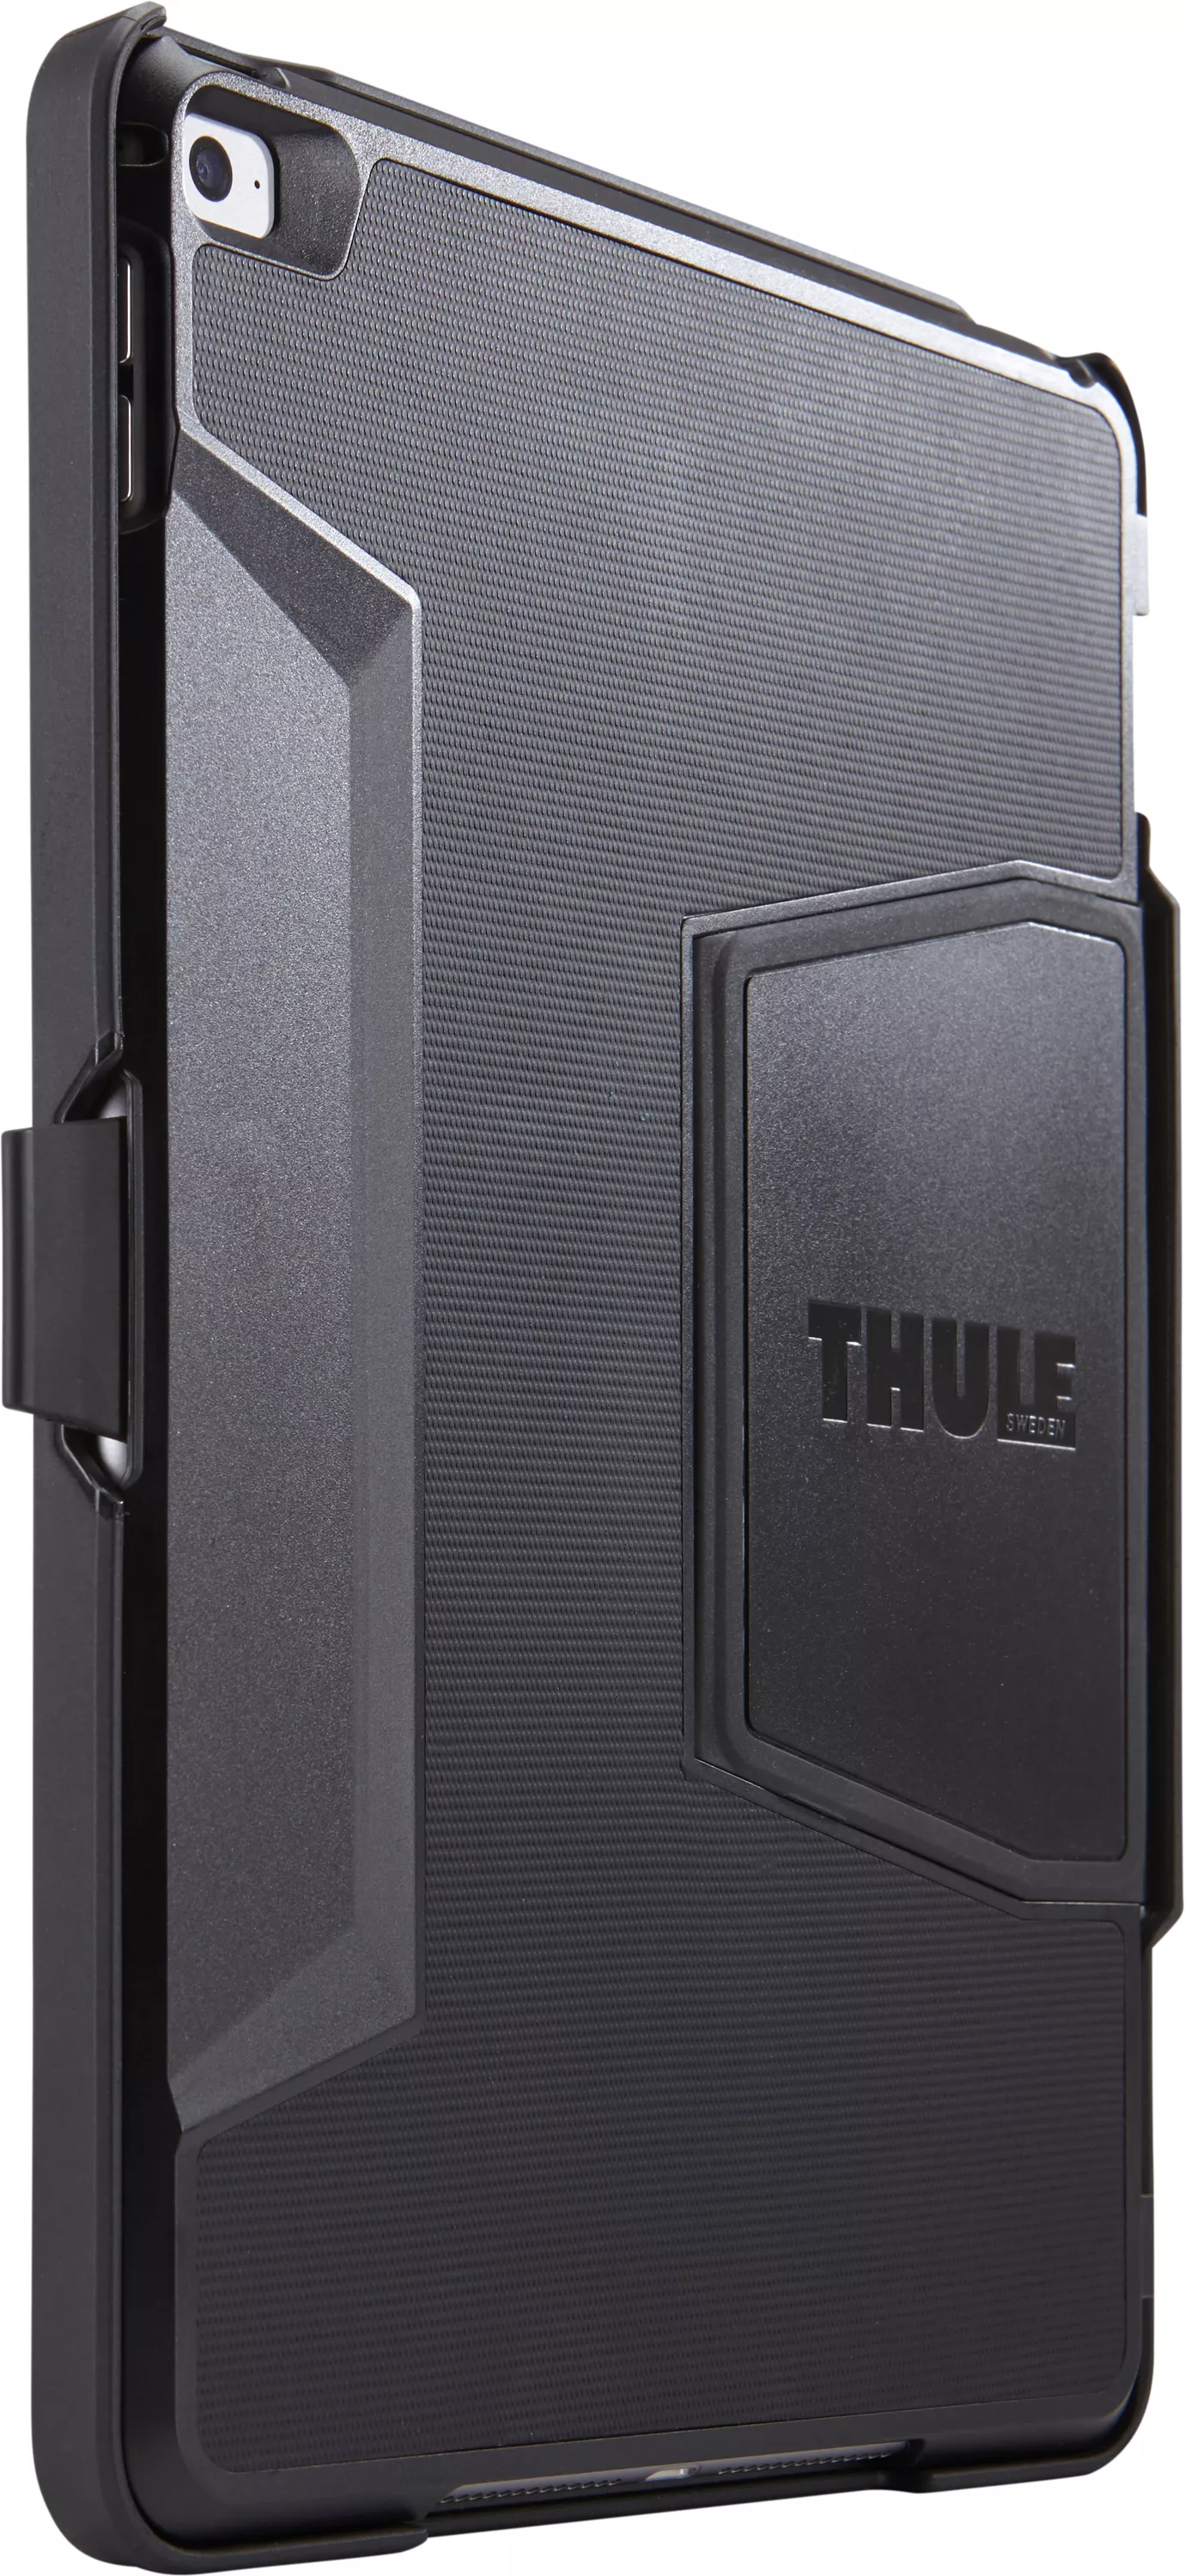 Vente Thule Atmos X3 pour iPad mini 4 Thule au meilleur prix - visuel 6